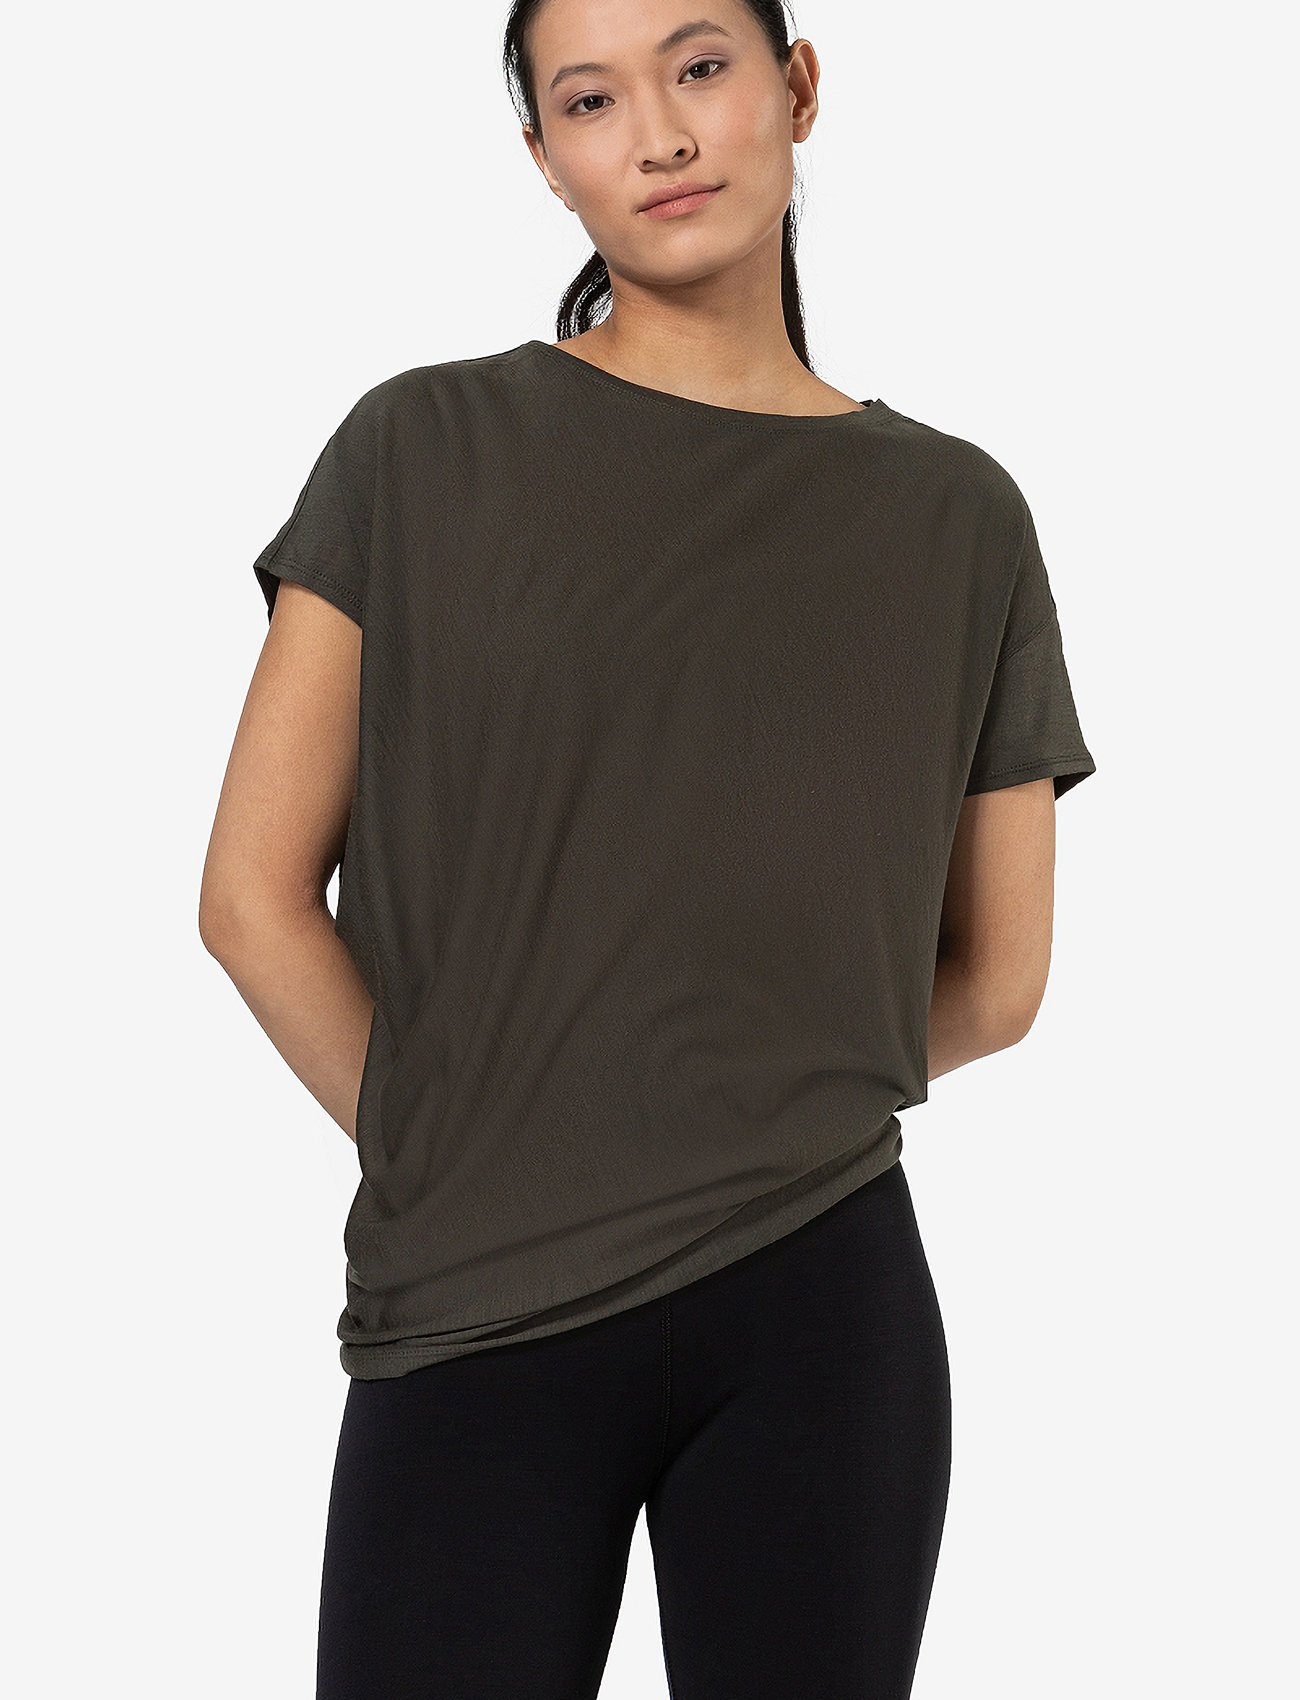 SUPER.NATURAL Camiseta Mujer - Yoga Loose - Lavender